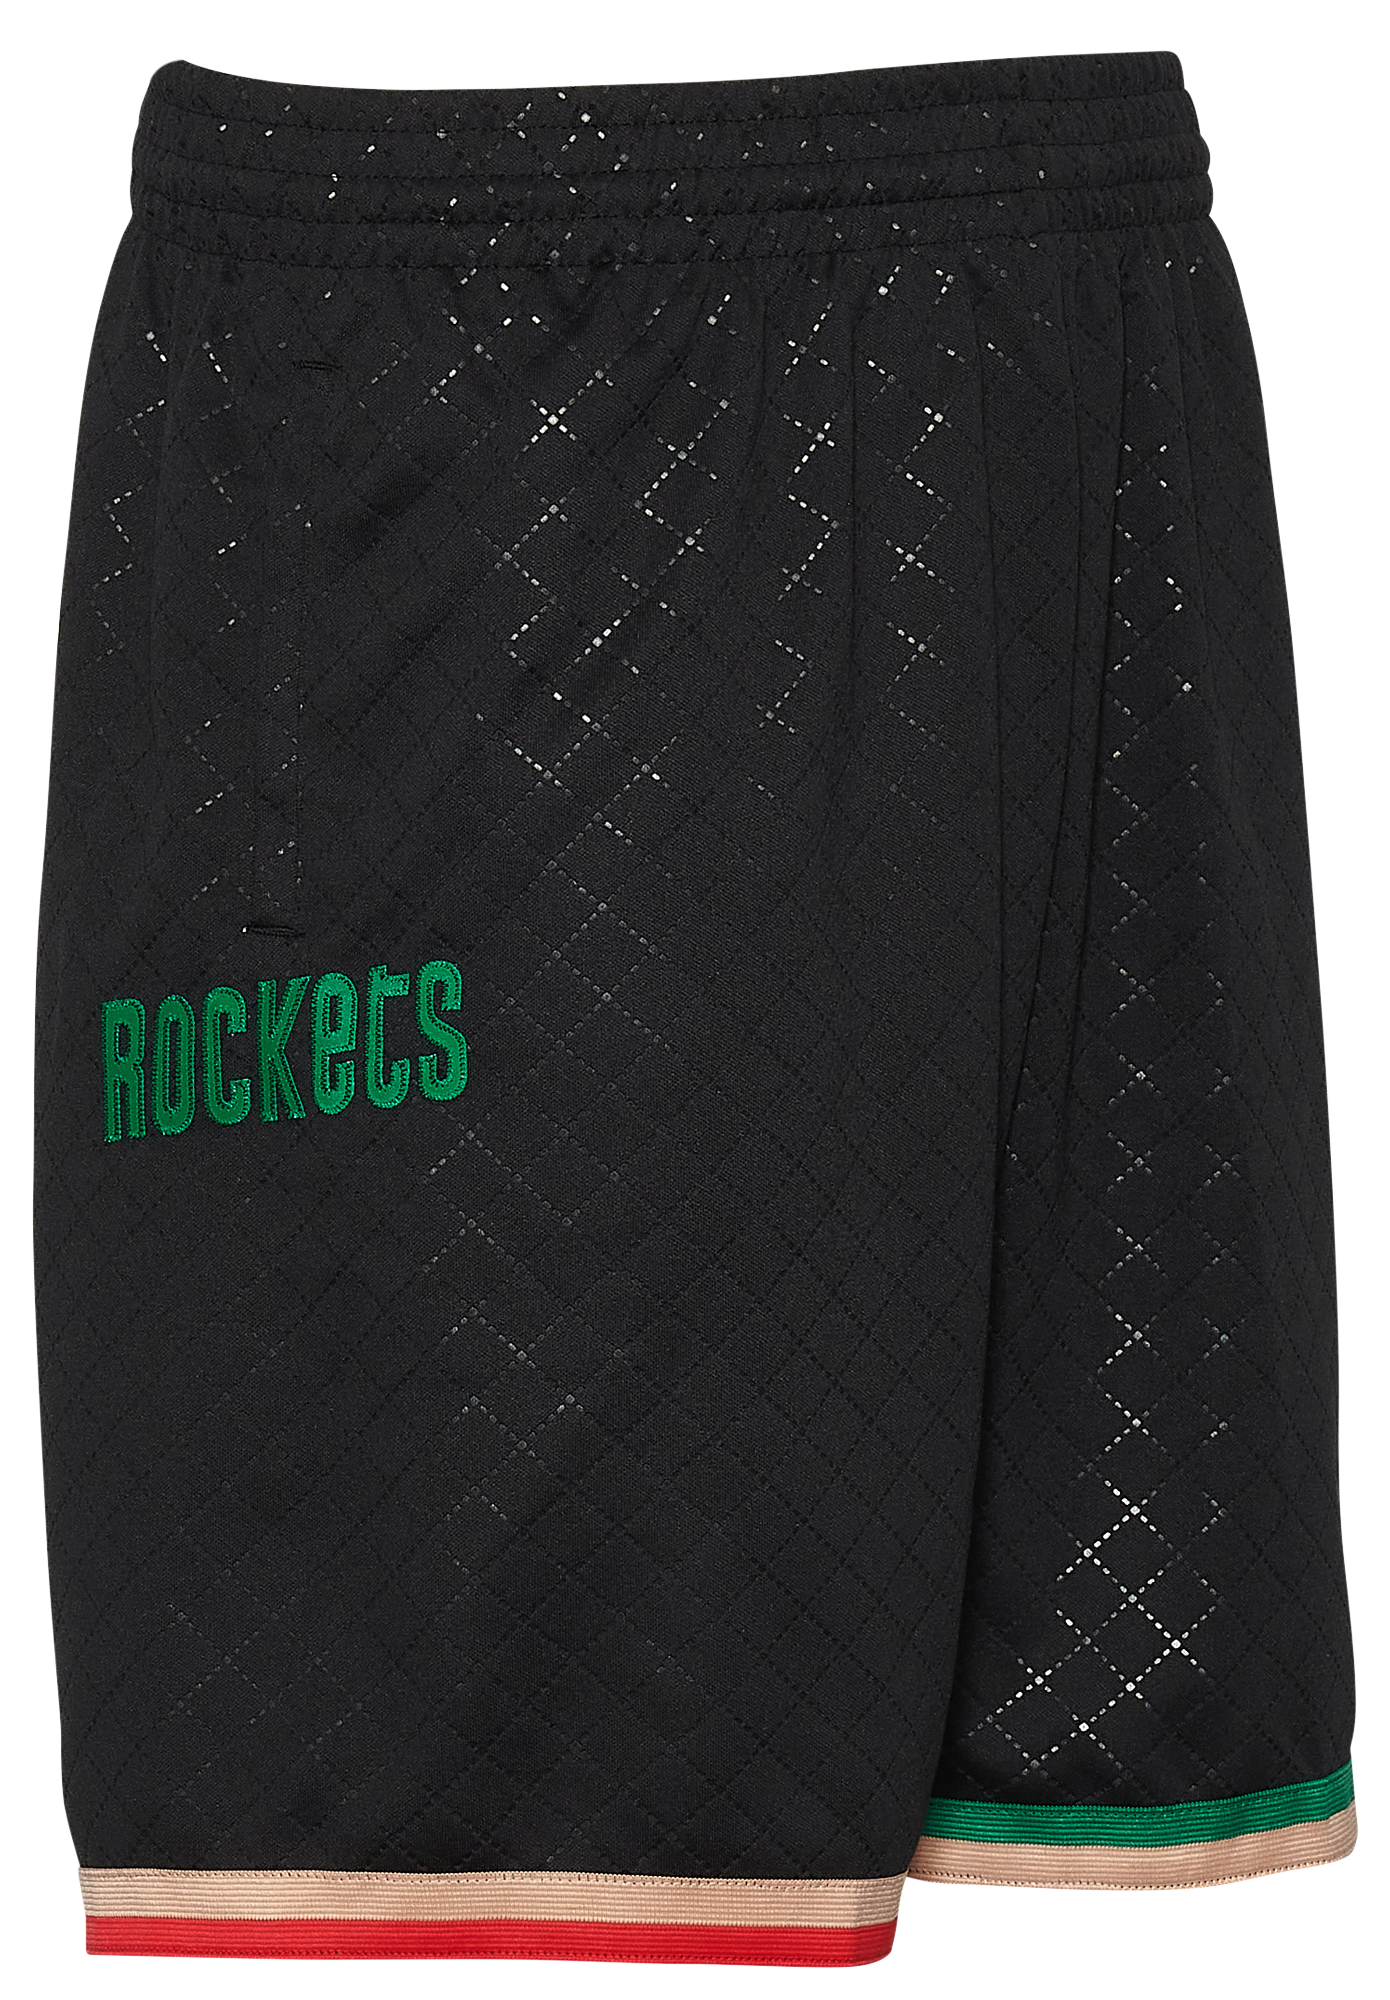 Mitchell & Ness Rockets Swingman Shorts